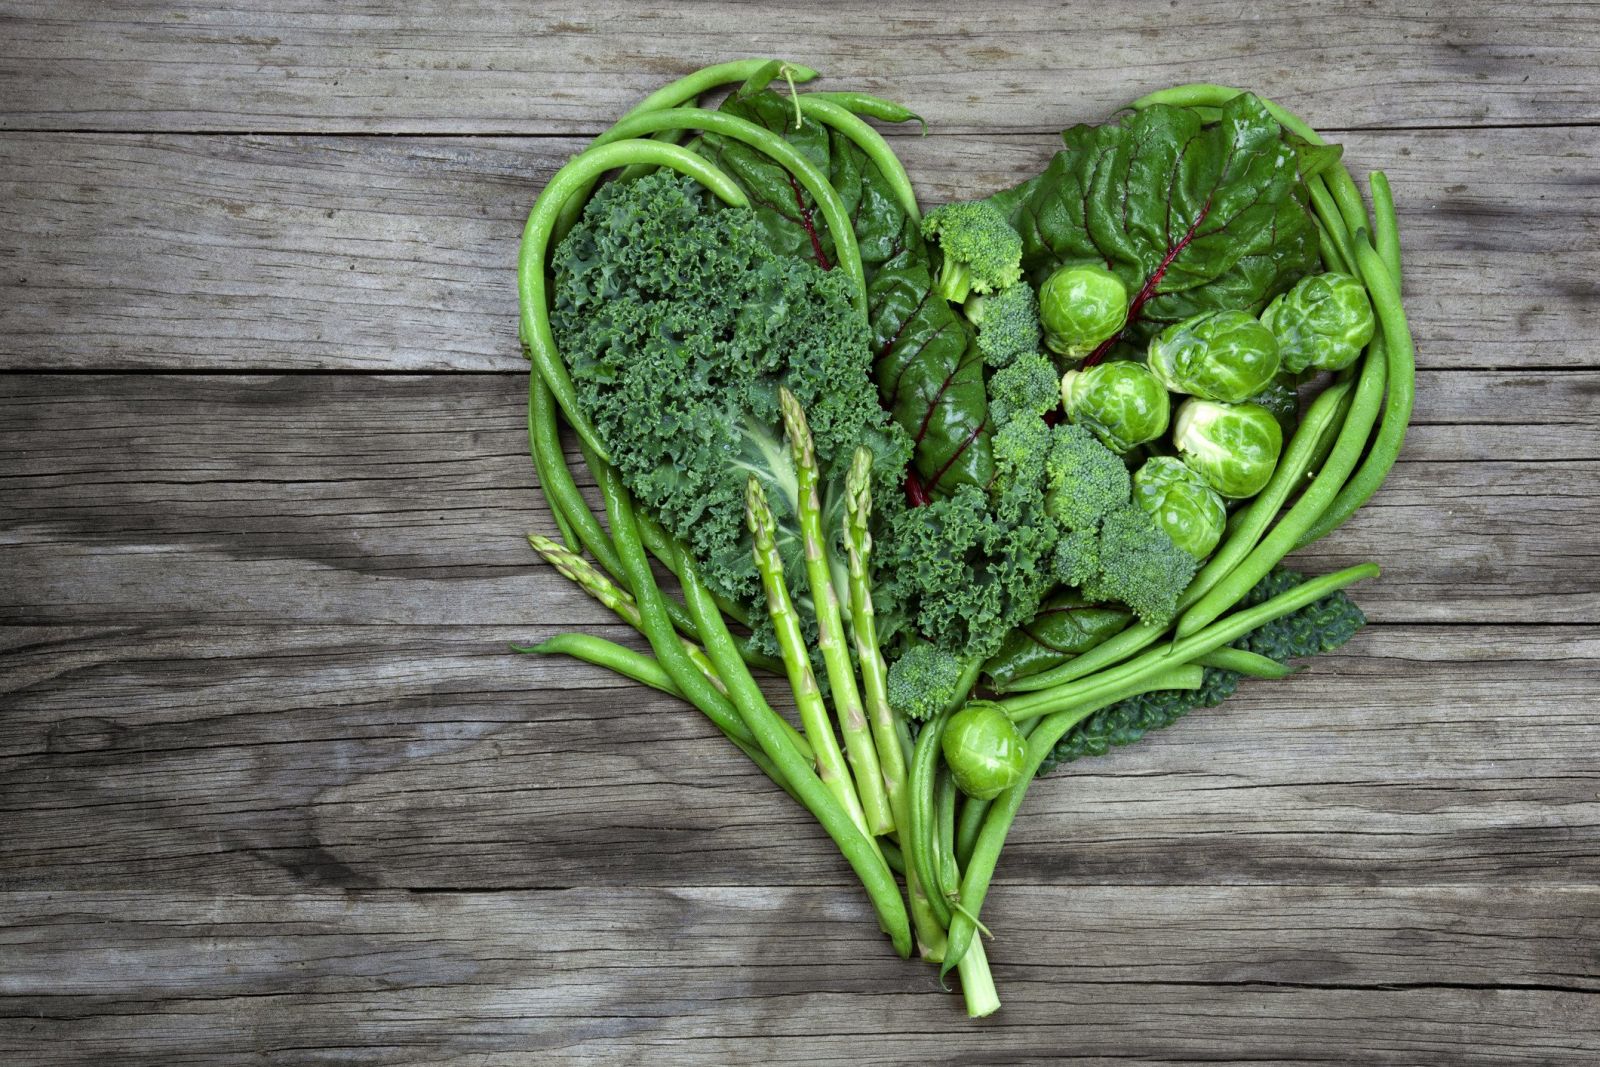 Các chuyên gia, bác sĩ luôn khuyến cáo về việc ăn rau xanh mỗi ngày để phòng ngừa bệnh tim mạch